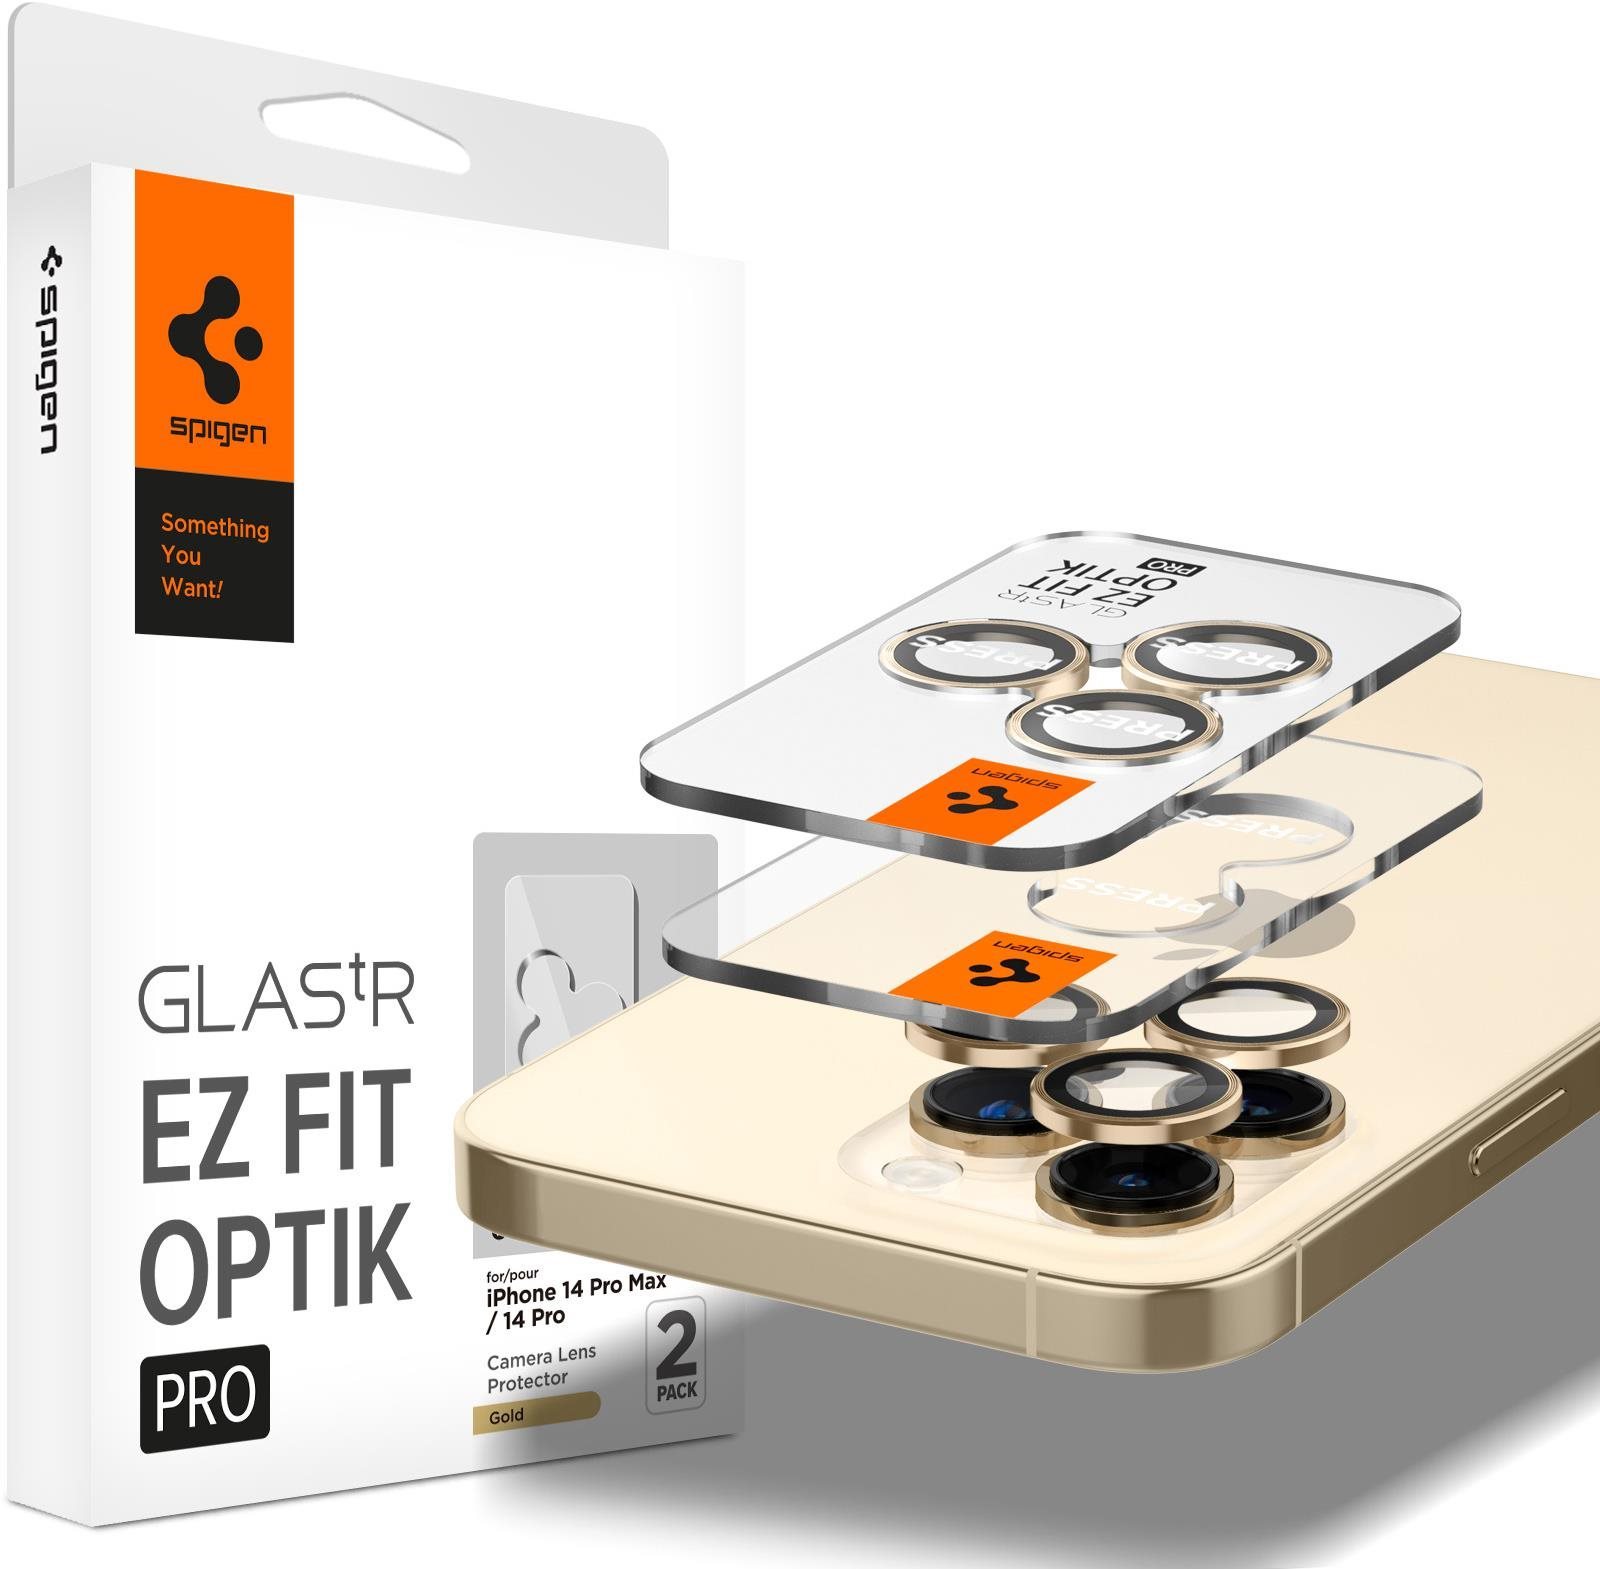 Spigen Glass EZ Fit Optik Pro 2 Pack Gold iPhone 14 Pro/iPhone 14 Pro Max